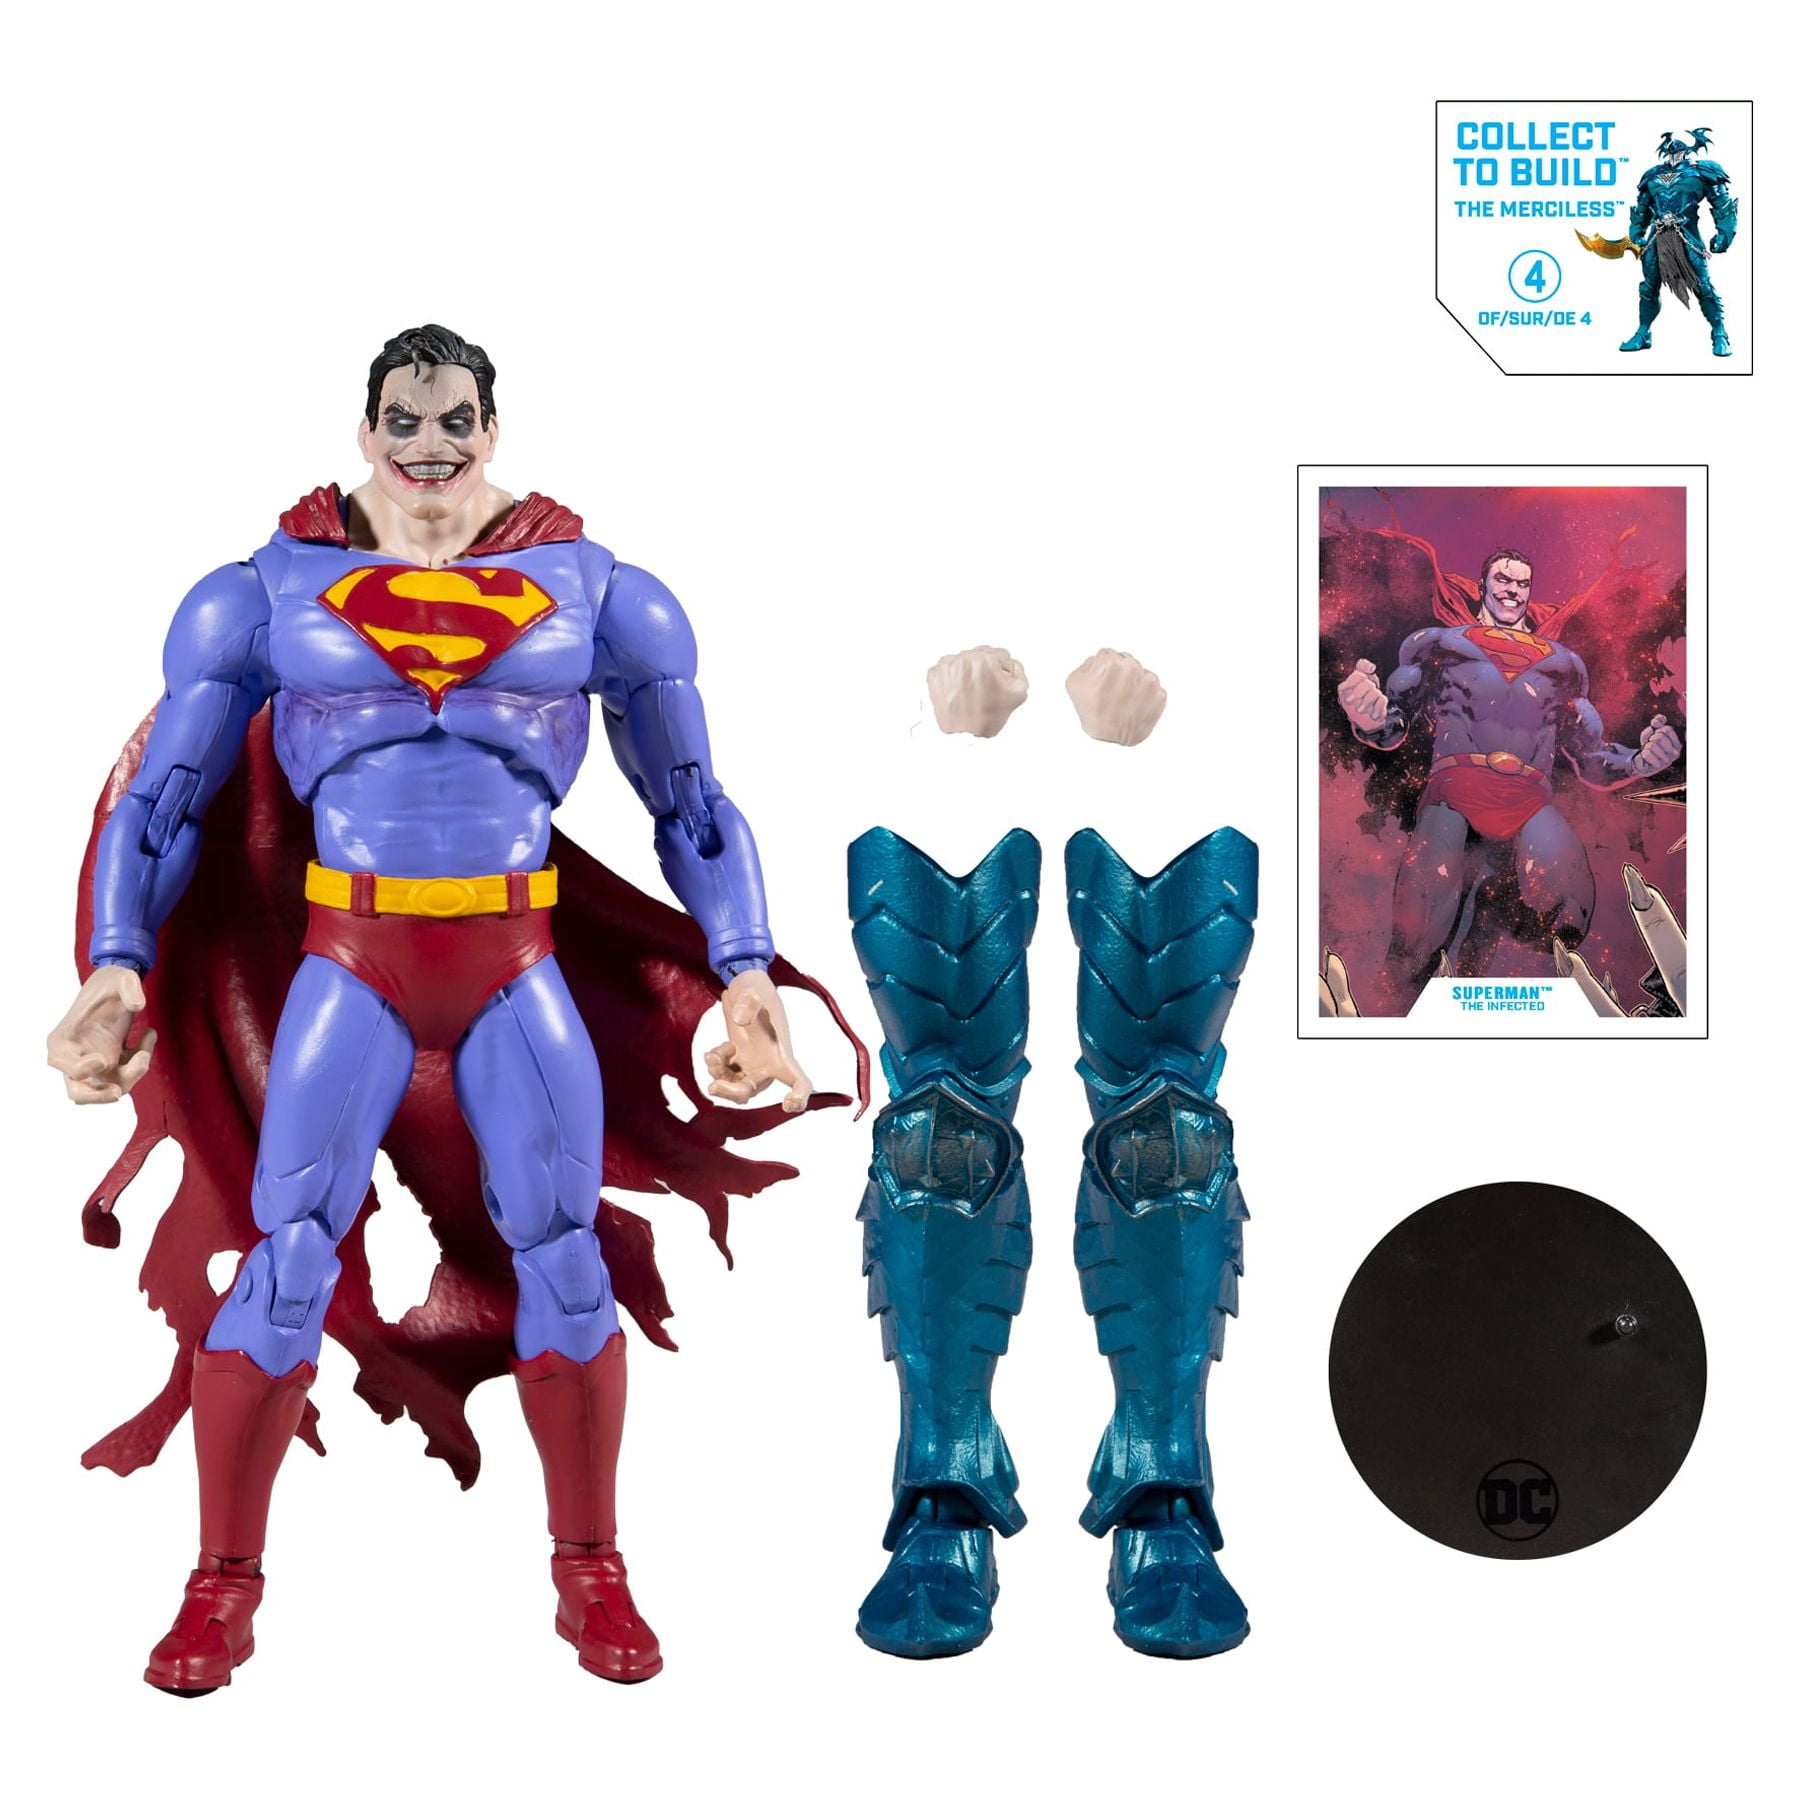 Superhero Statues Paintable Figurines, Multiverse Comic Box